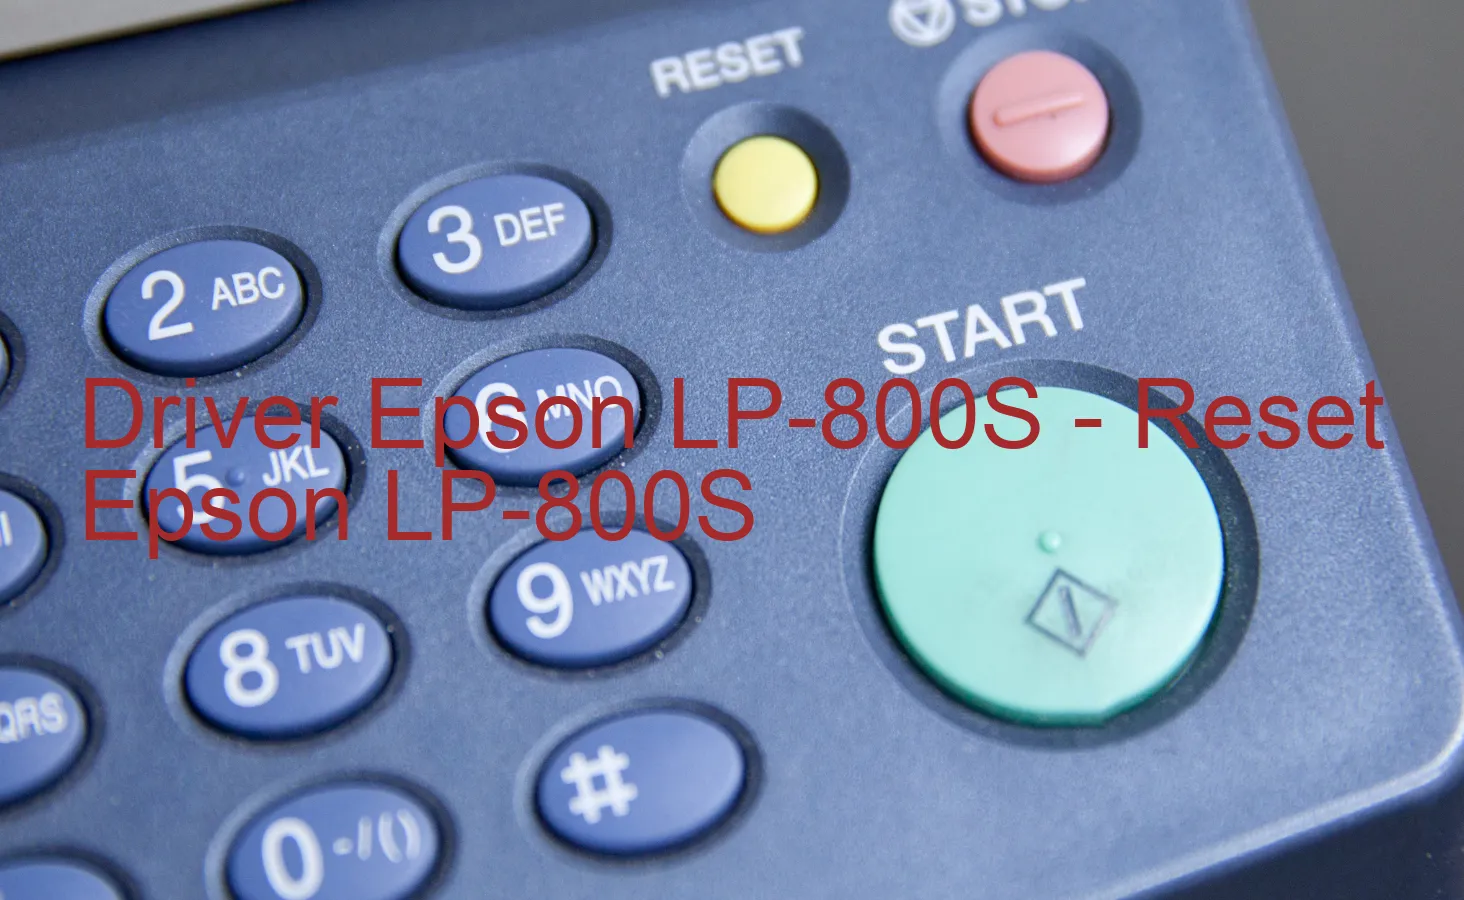 Epson LP-800Sのドライバー、Epson LP-800Sのリセットソフトウェア